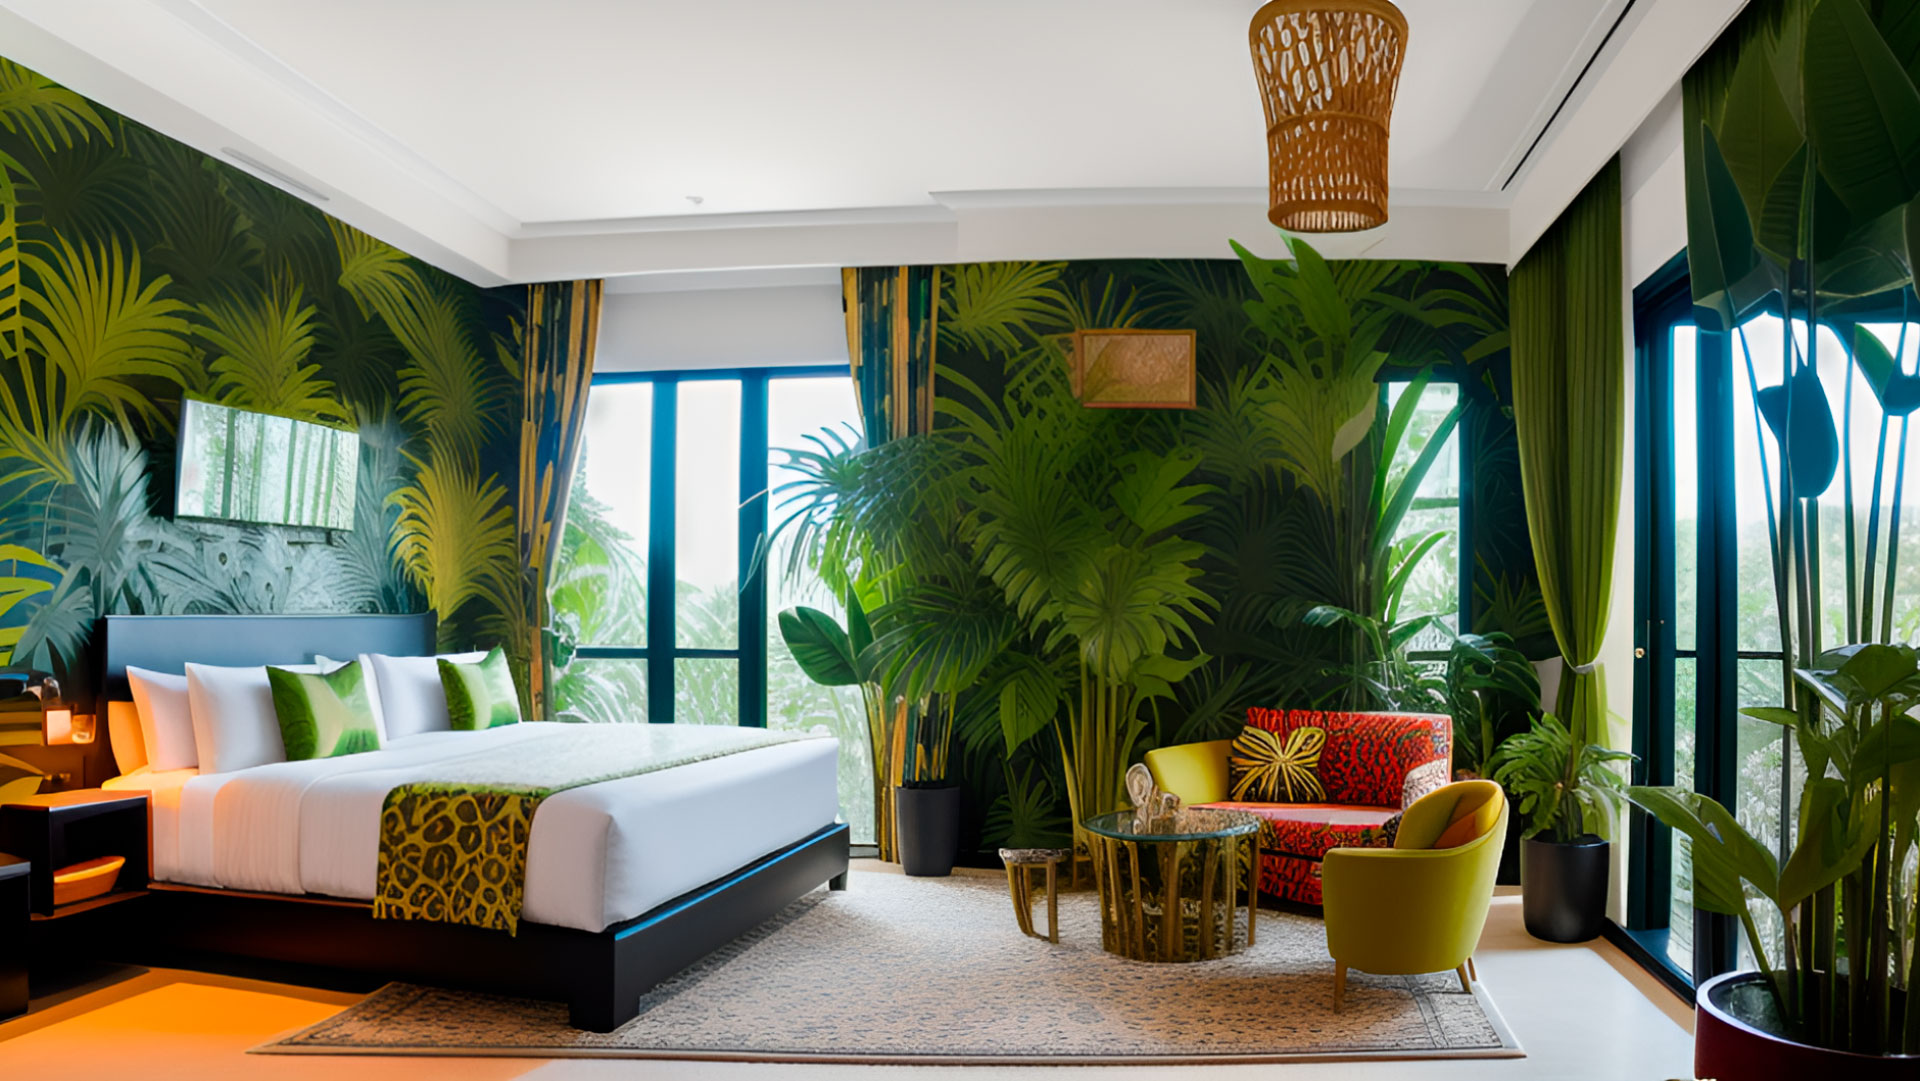 Aménagement intérieur : une chambre d’hôtel dans la jungle